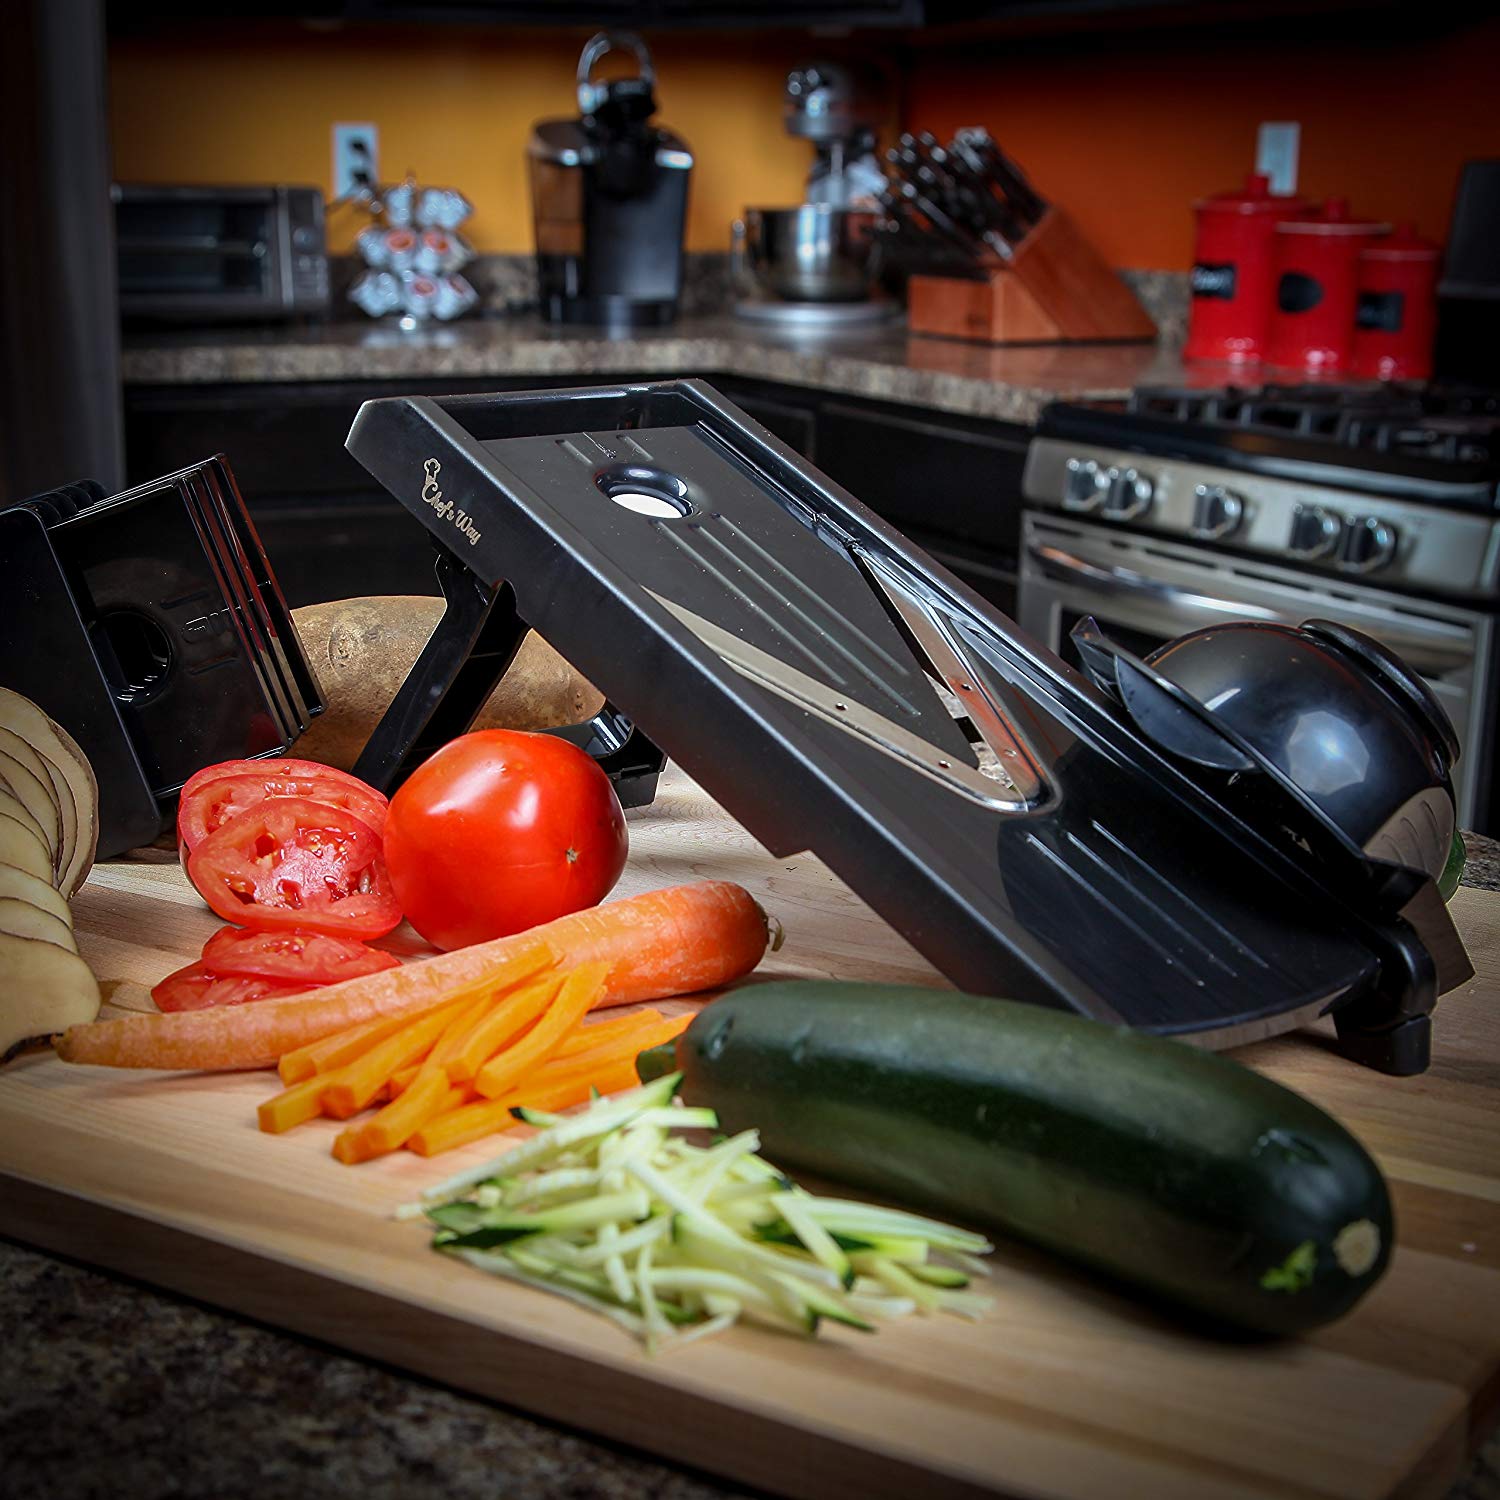 Chef's Way Mandoline Slicer - Professional Kitchen V-Slicer + Bonus Recipes - Vegetable & Fruits, Food Cutter, Chopper & Slicer - Stainless Steel Sharp Blade